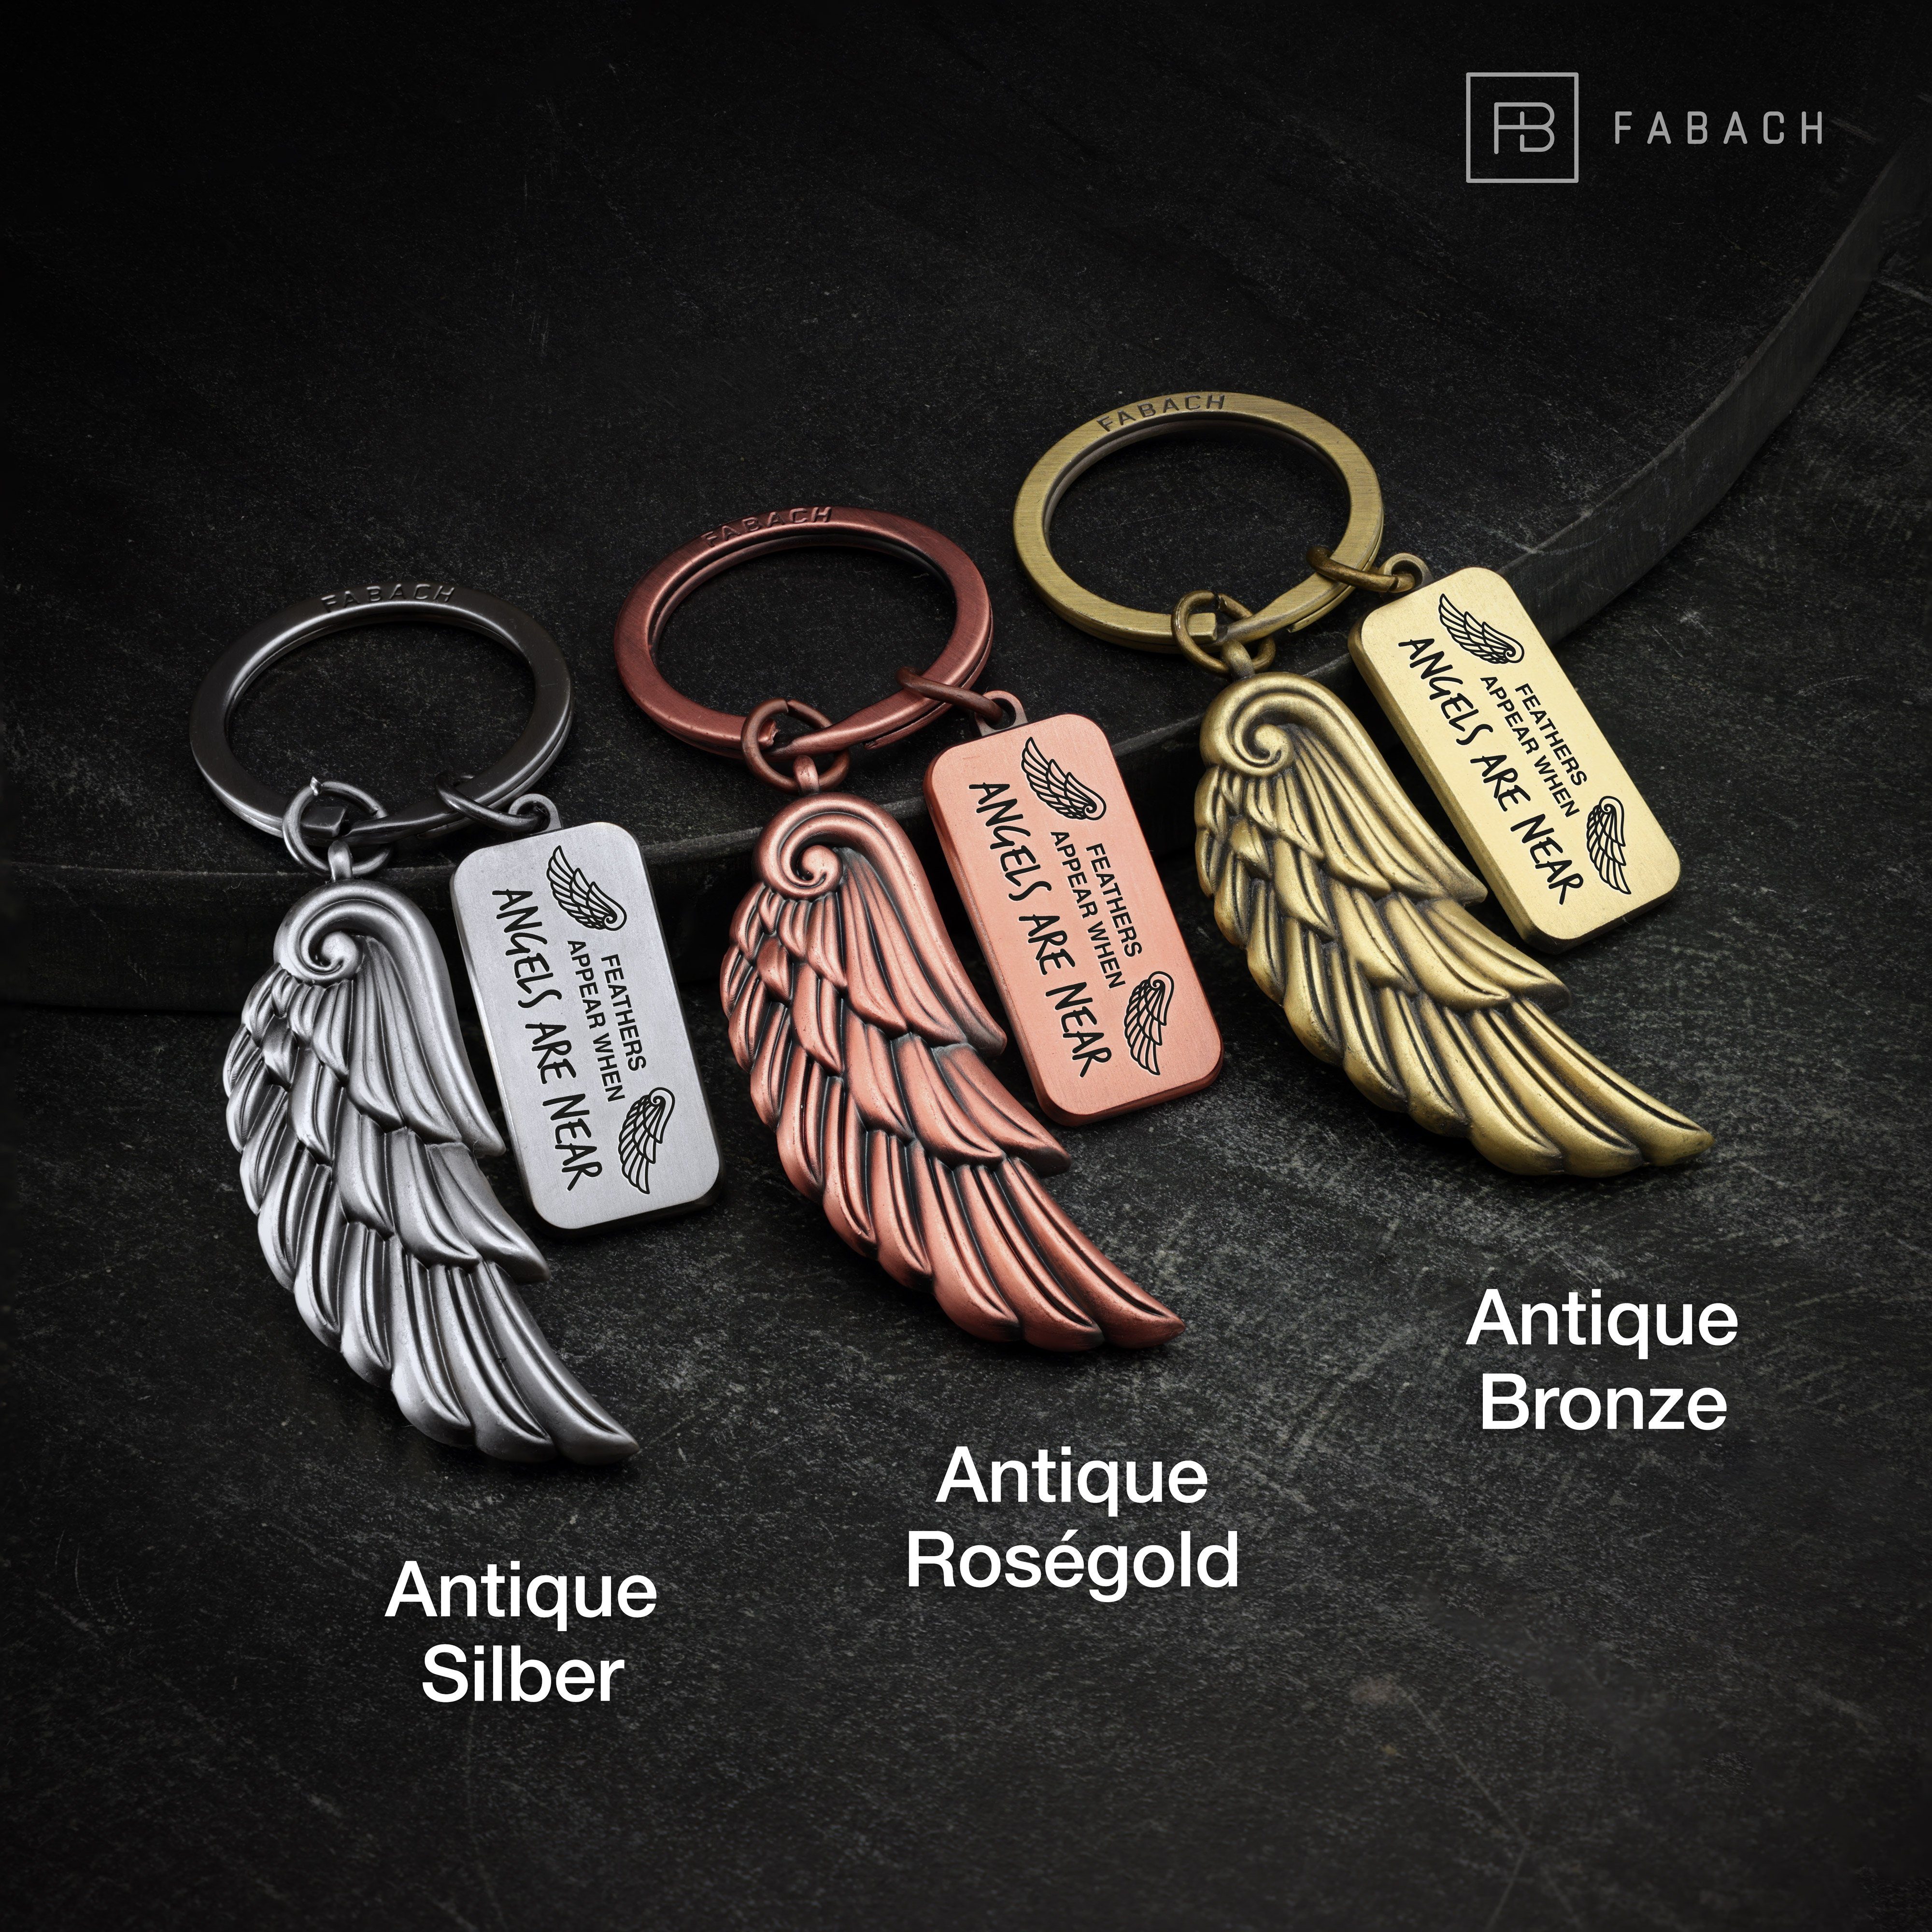 Gravur Angels mit Geschenk Antique Bronze Near Engelsflügel - Schutzengel Are Angel FABACH Schlüsselanhänger -